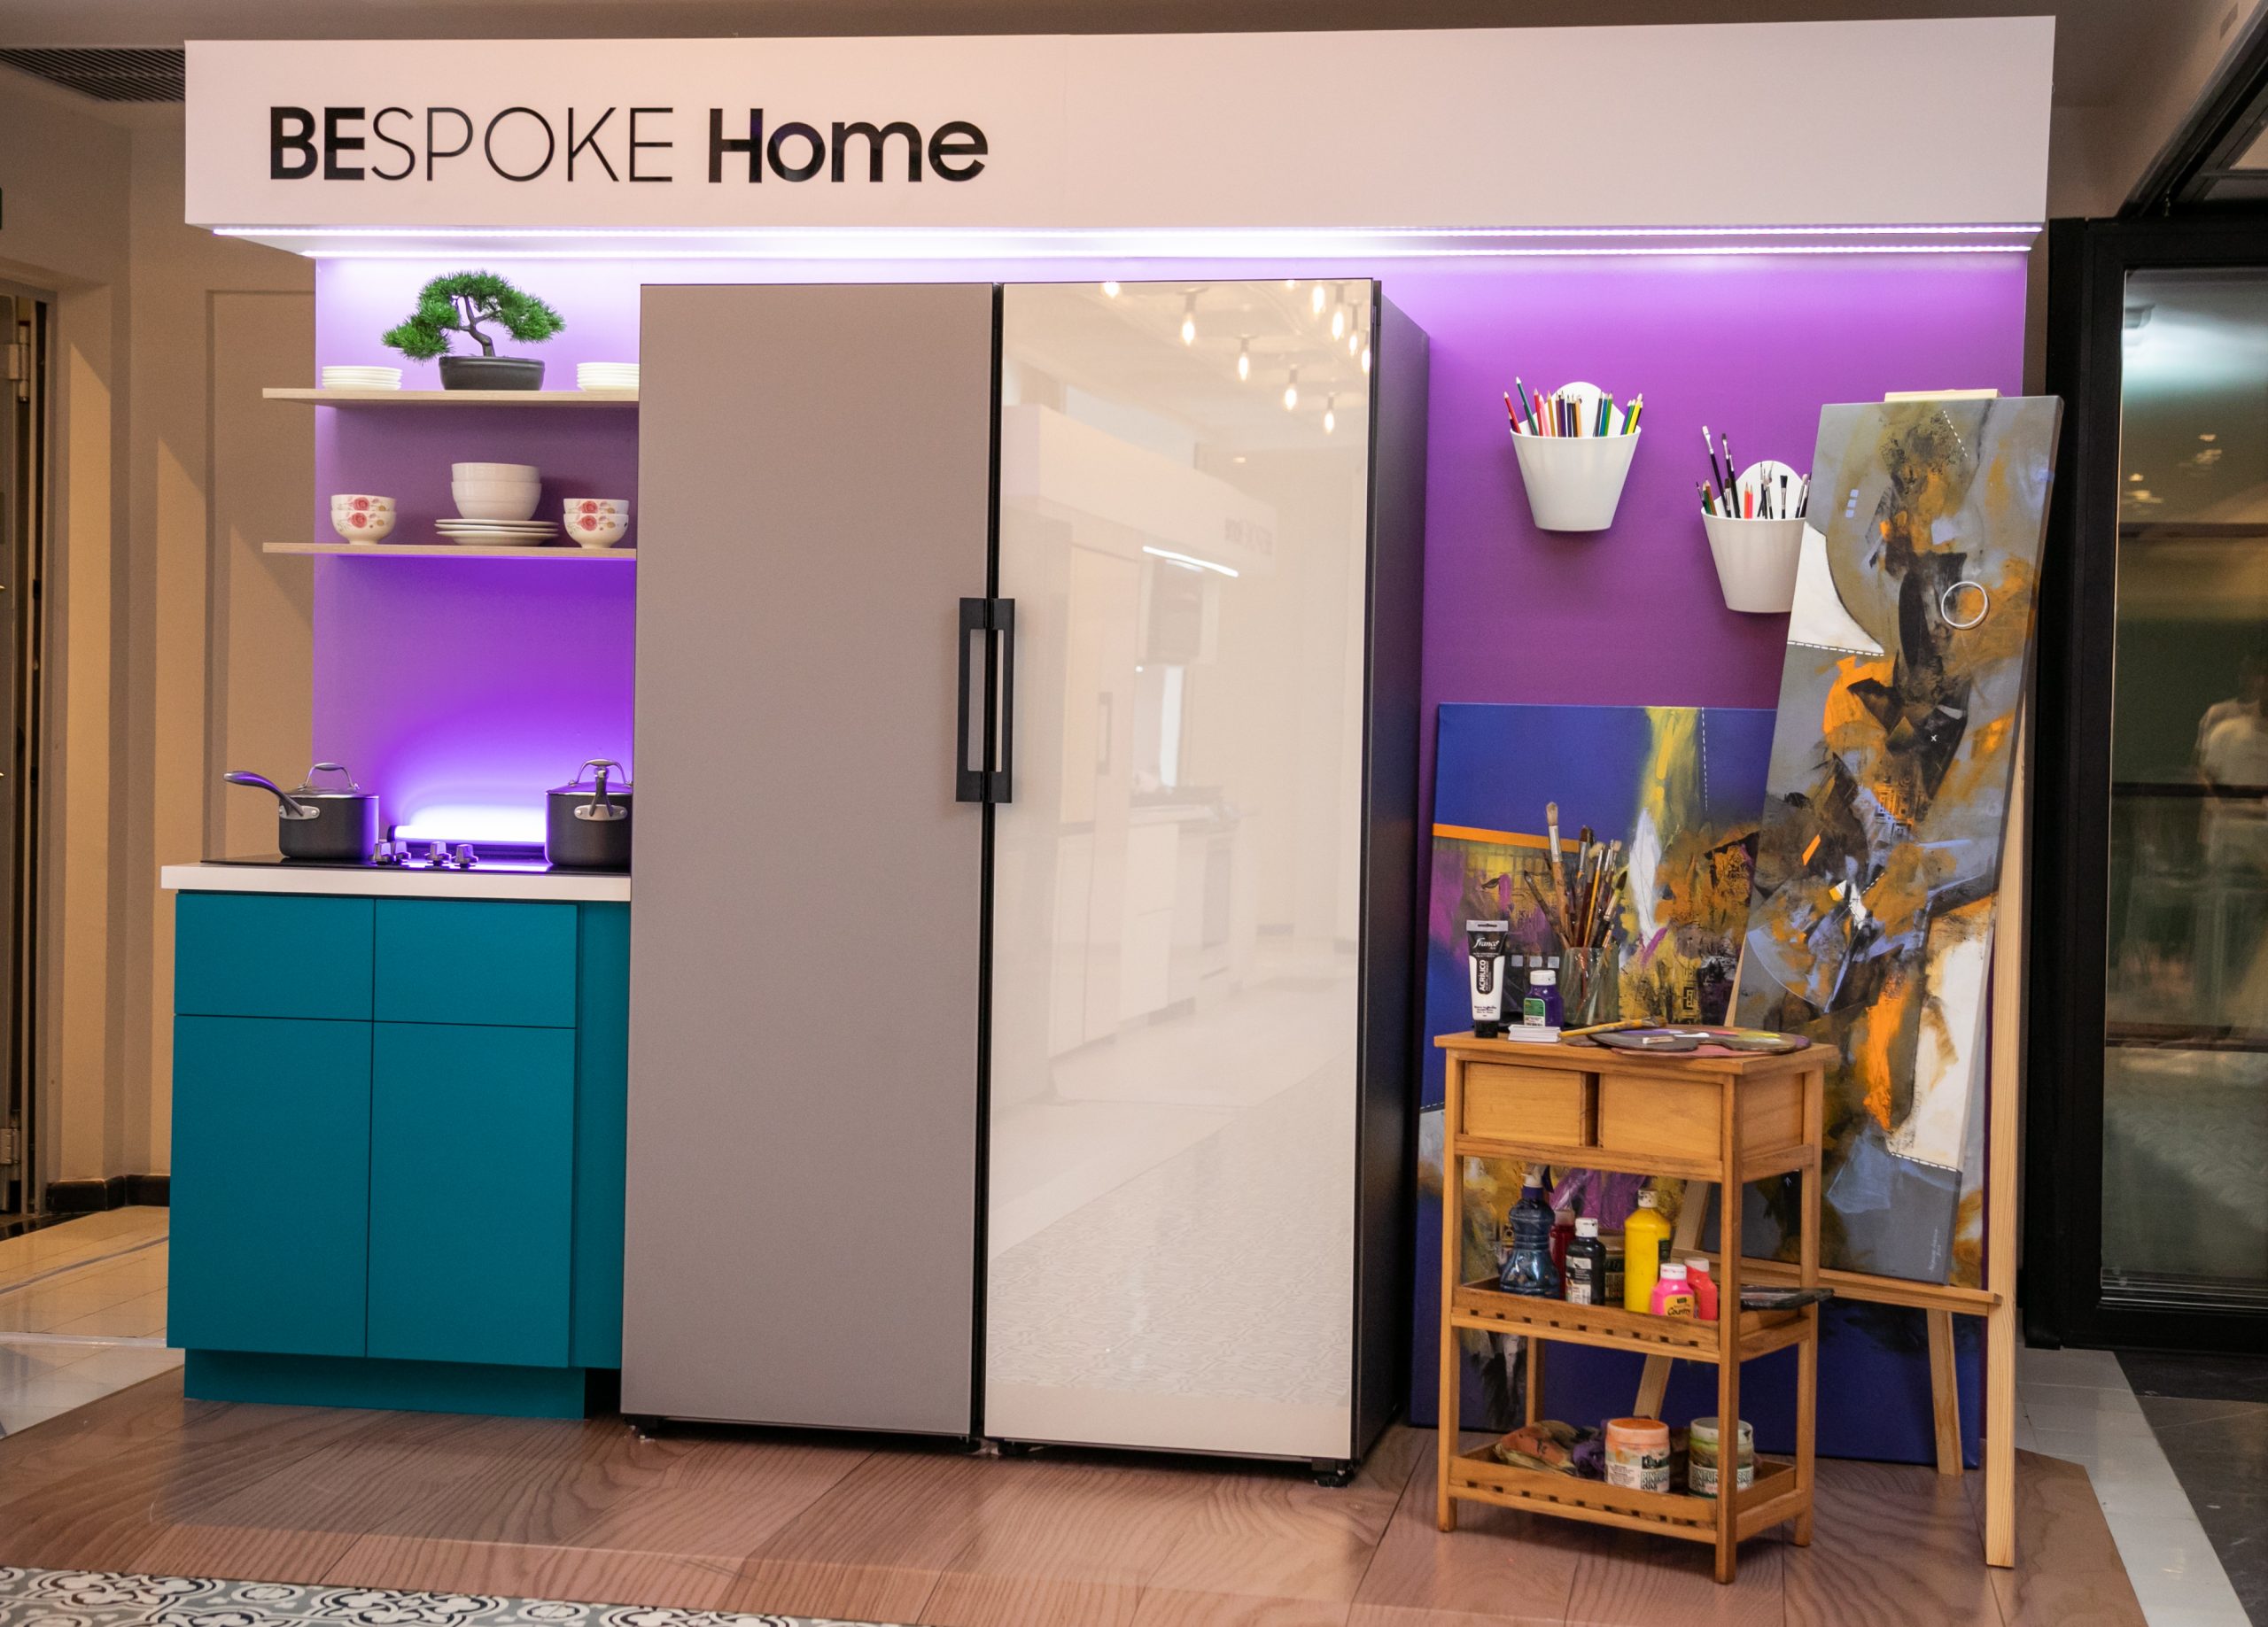 La refrigeradora Bespoke añade color y elegancia a la cocina